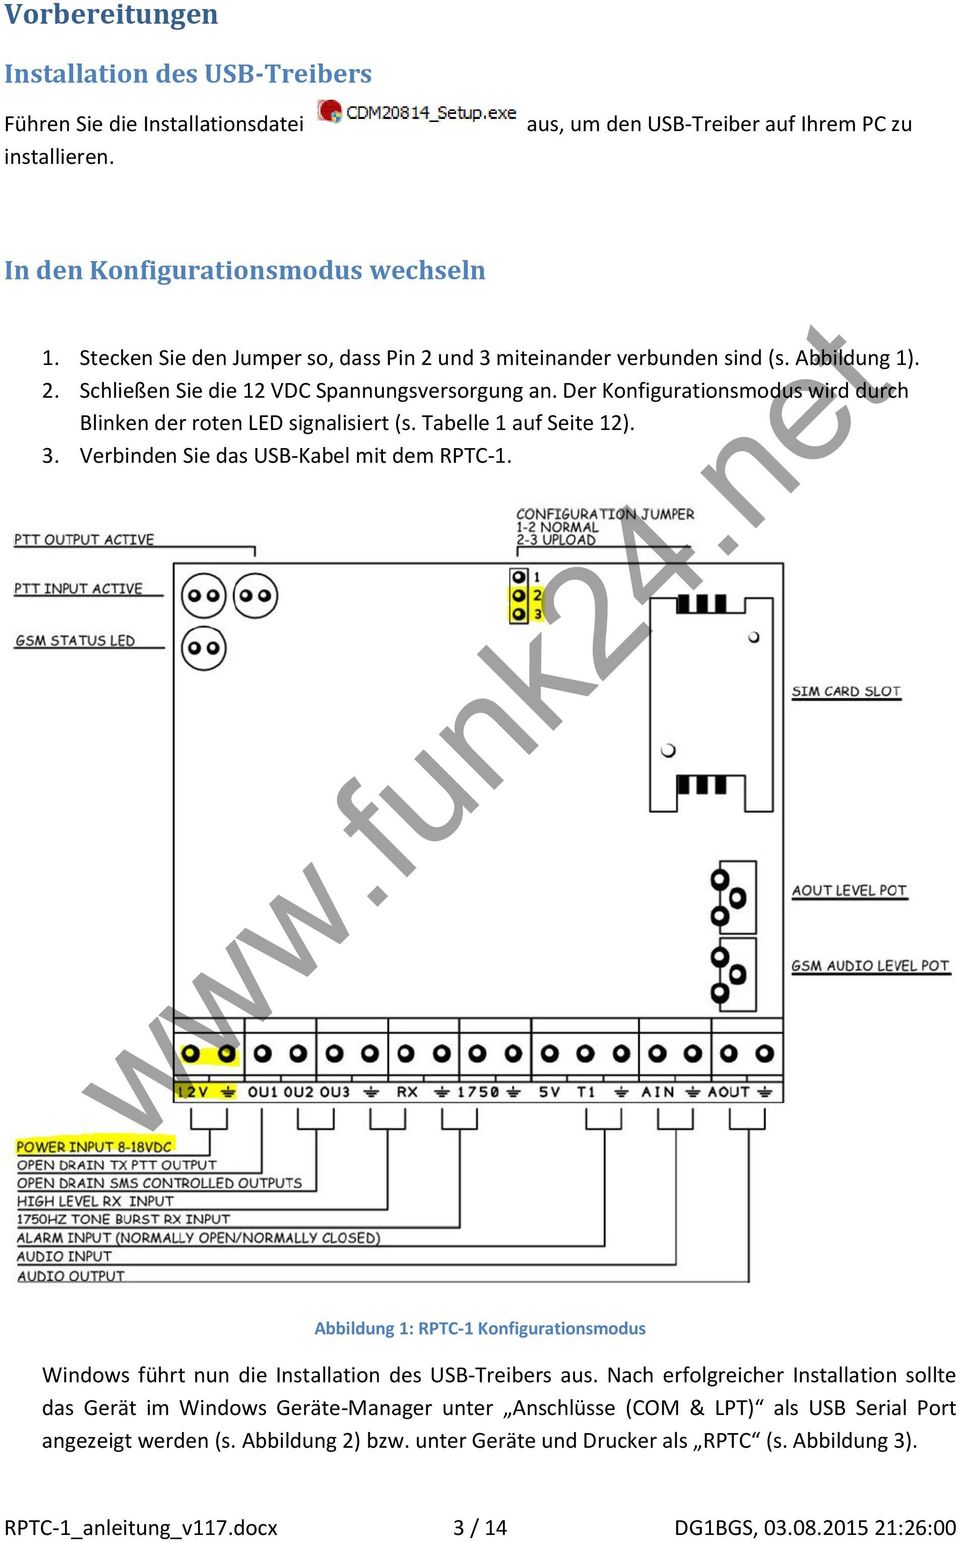 Der Konfigurationsmodus wird durch Blinken der roten LED signalisiert (s. Tabelle 1 auf Seite 12). 3. Verbinden Sie das USB-Kabel mit dem RPTC-1.